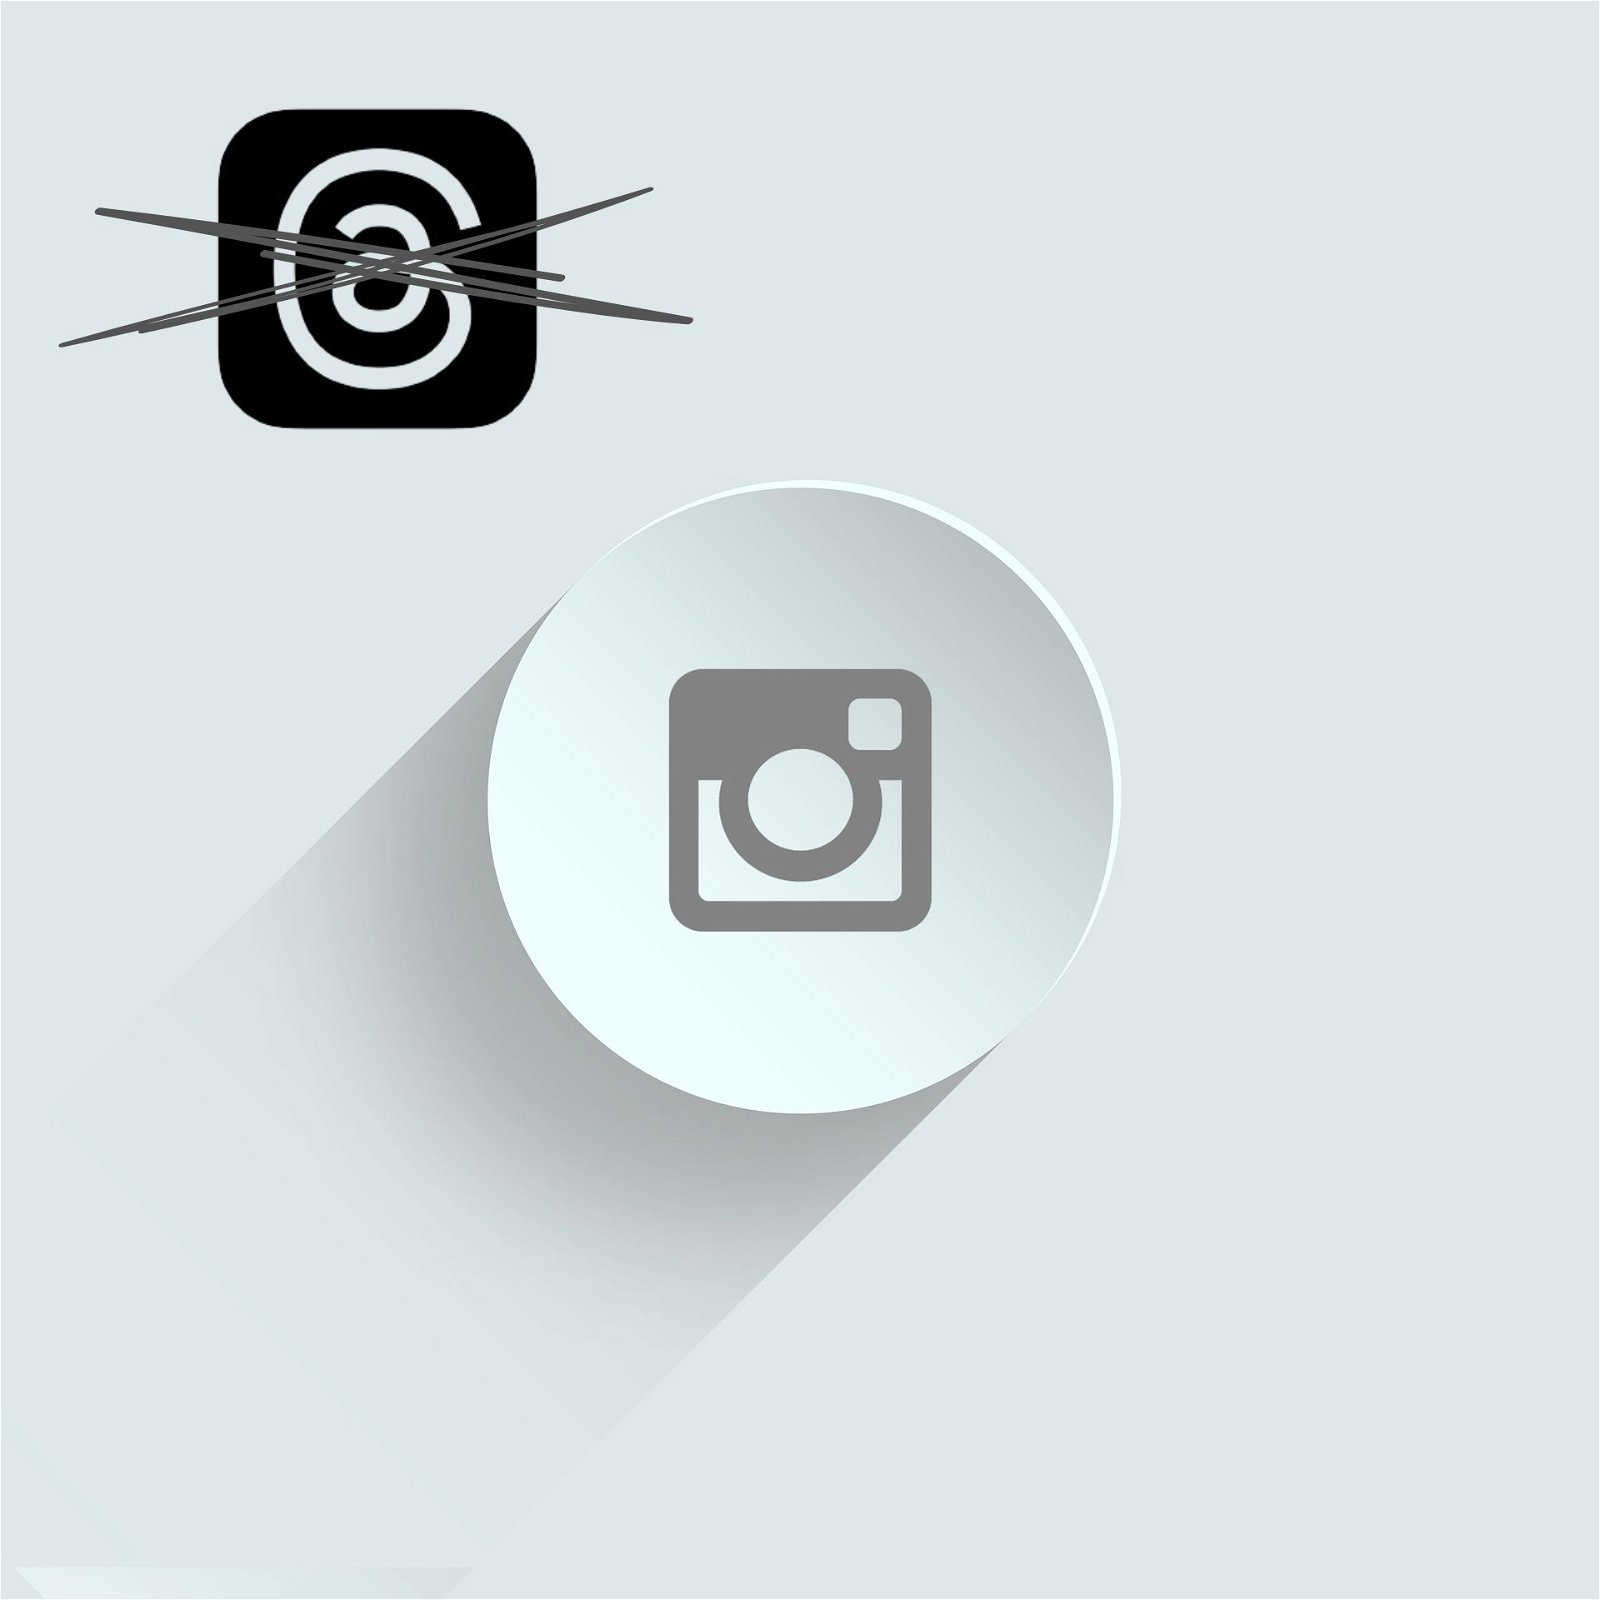 Logo de Instagram y logo de Threads tachado